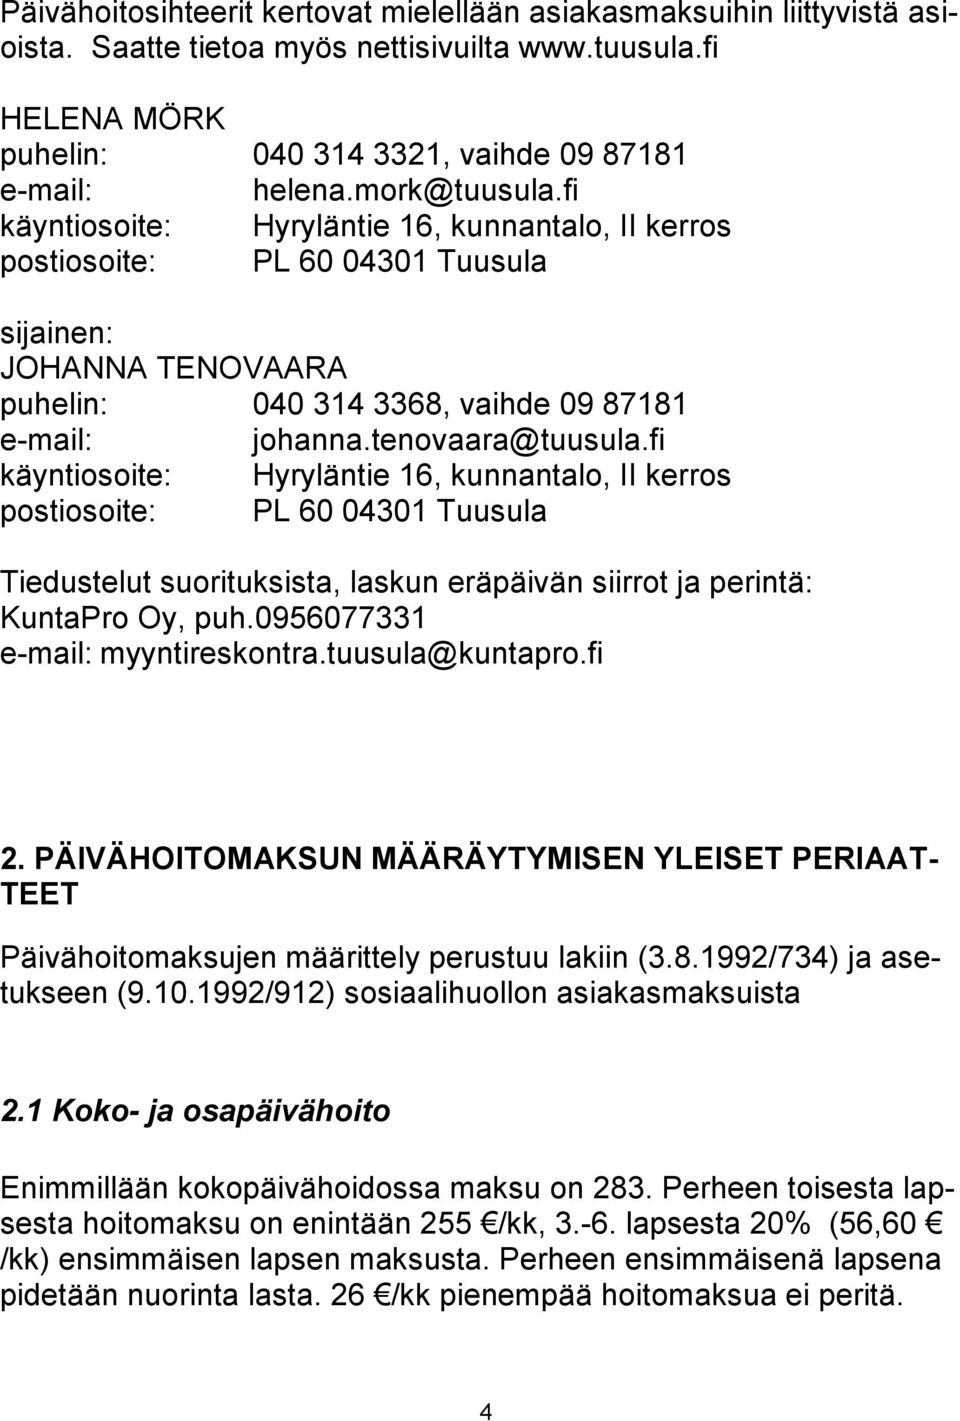 tenovaara@tuusula.fi käyntiosoite: Hyryläntie 16, kunnantalo, II kerros postiosoite: PL 60 04301 Tuusula Tiedustelut suorituksista, laskun eräpäivän siirrot ja perintä: KuntaPro Oy, puh.